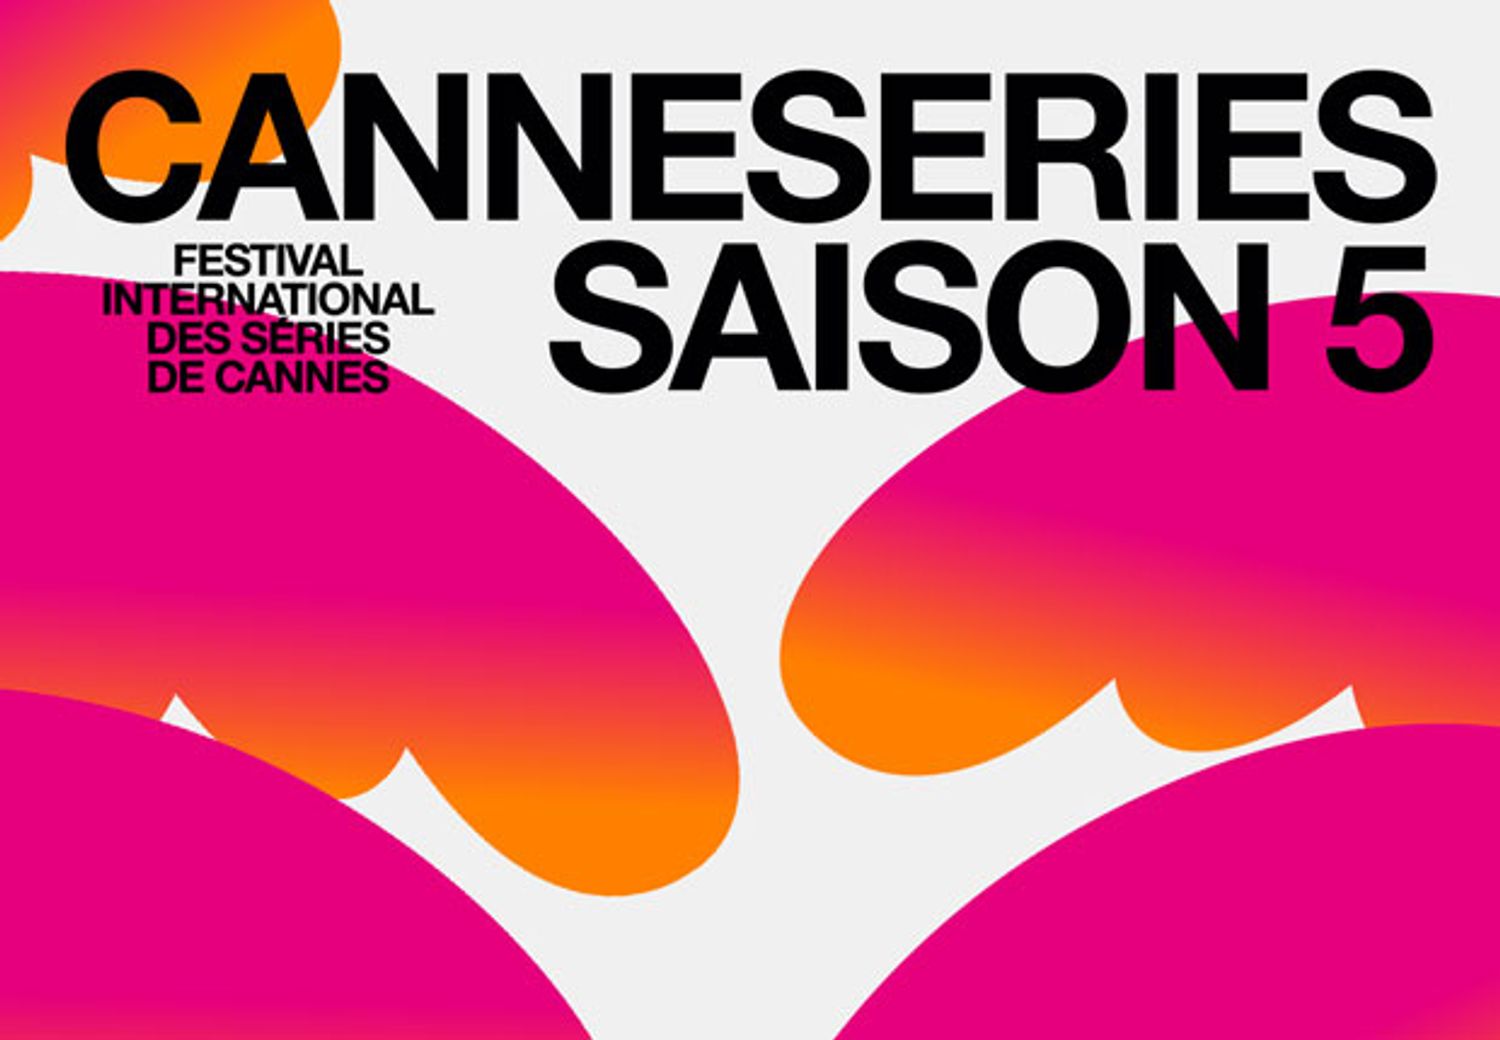 La cinquième édition de CanneSeries se tiendra du 1ER au 6 avril prochain au palais des festivals